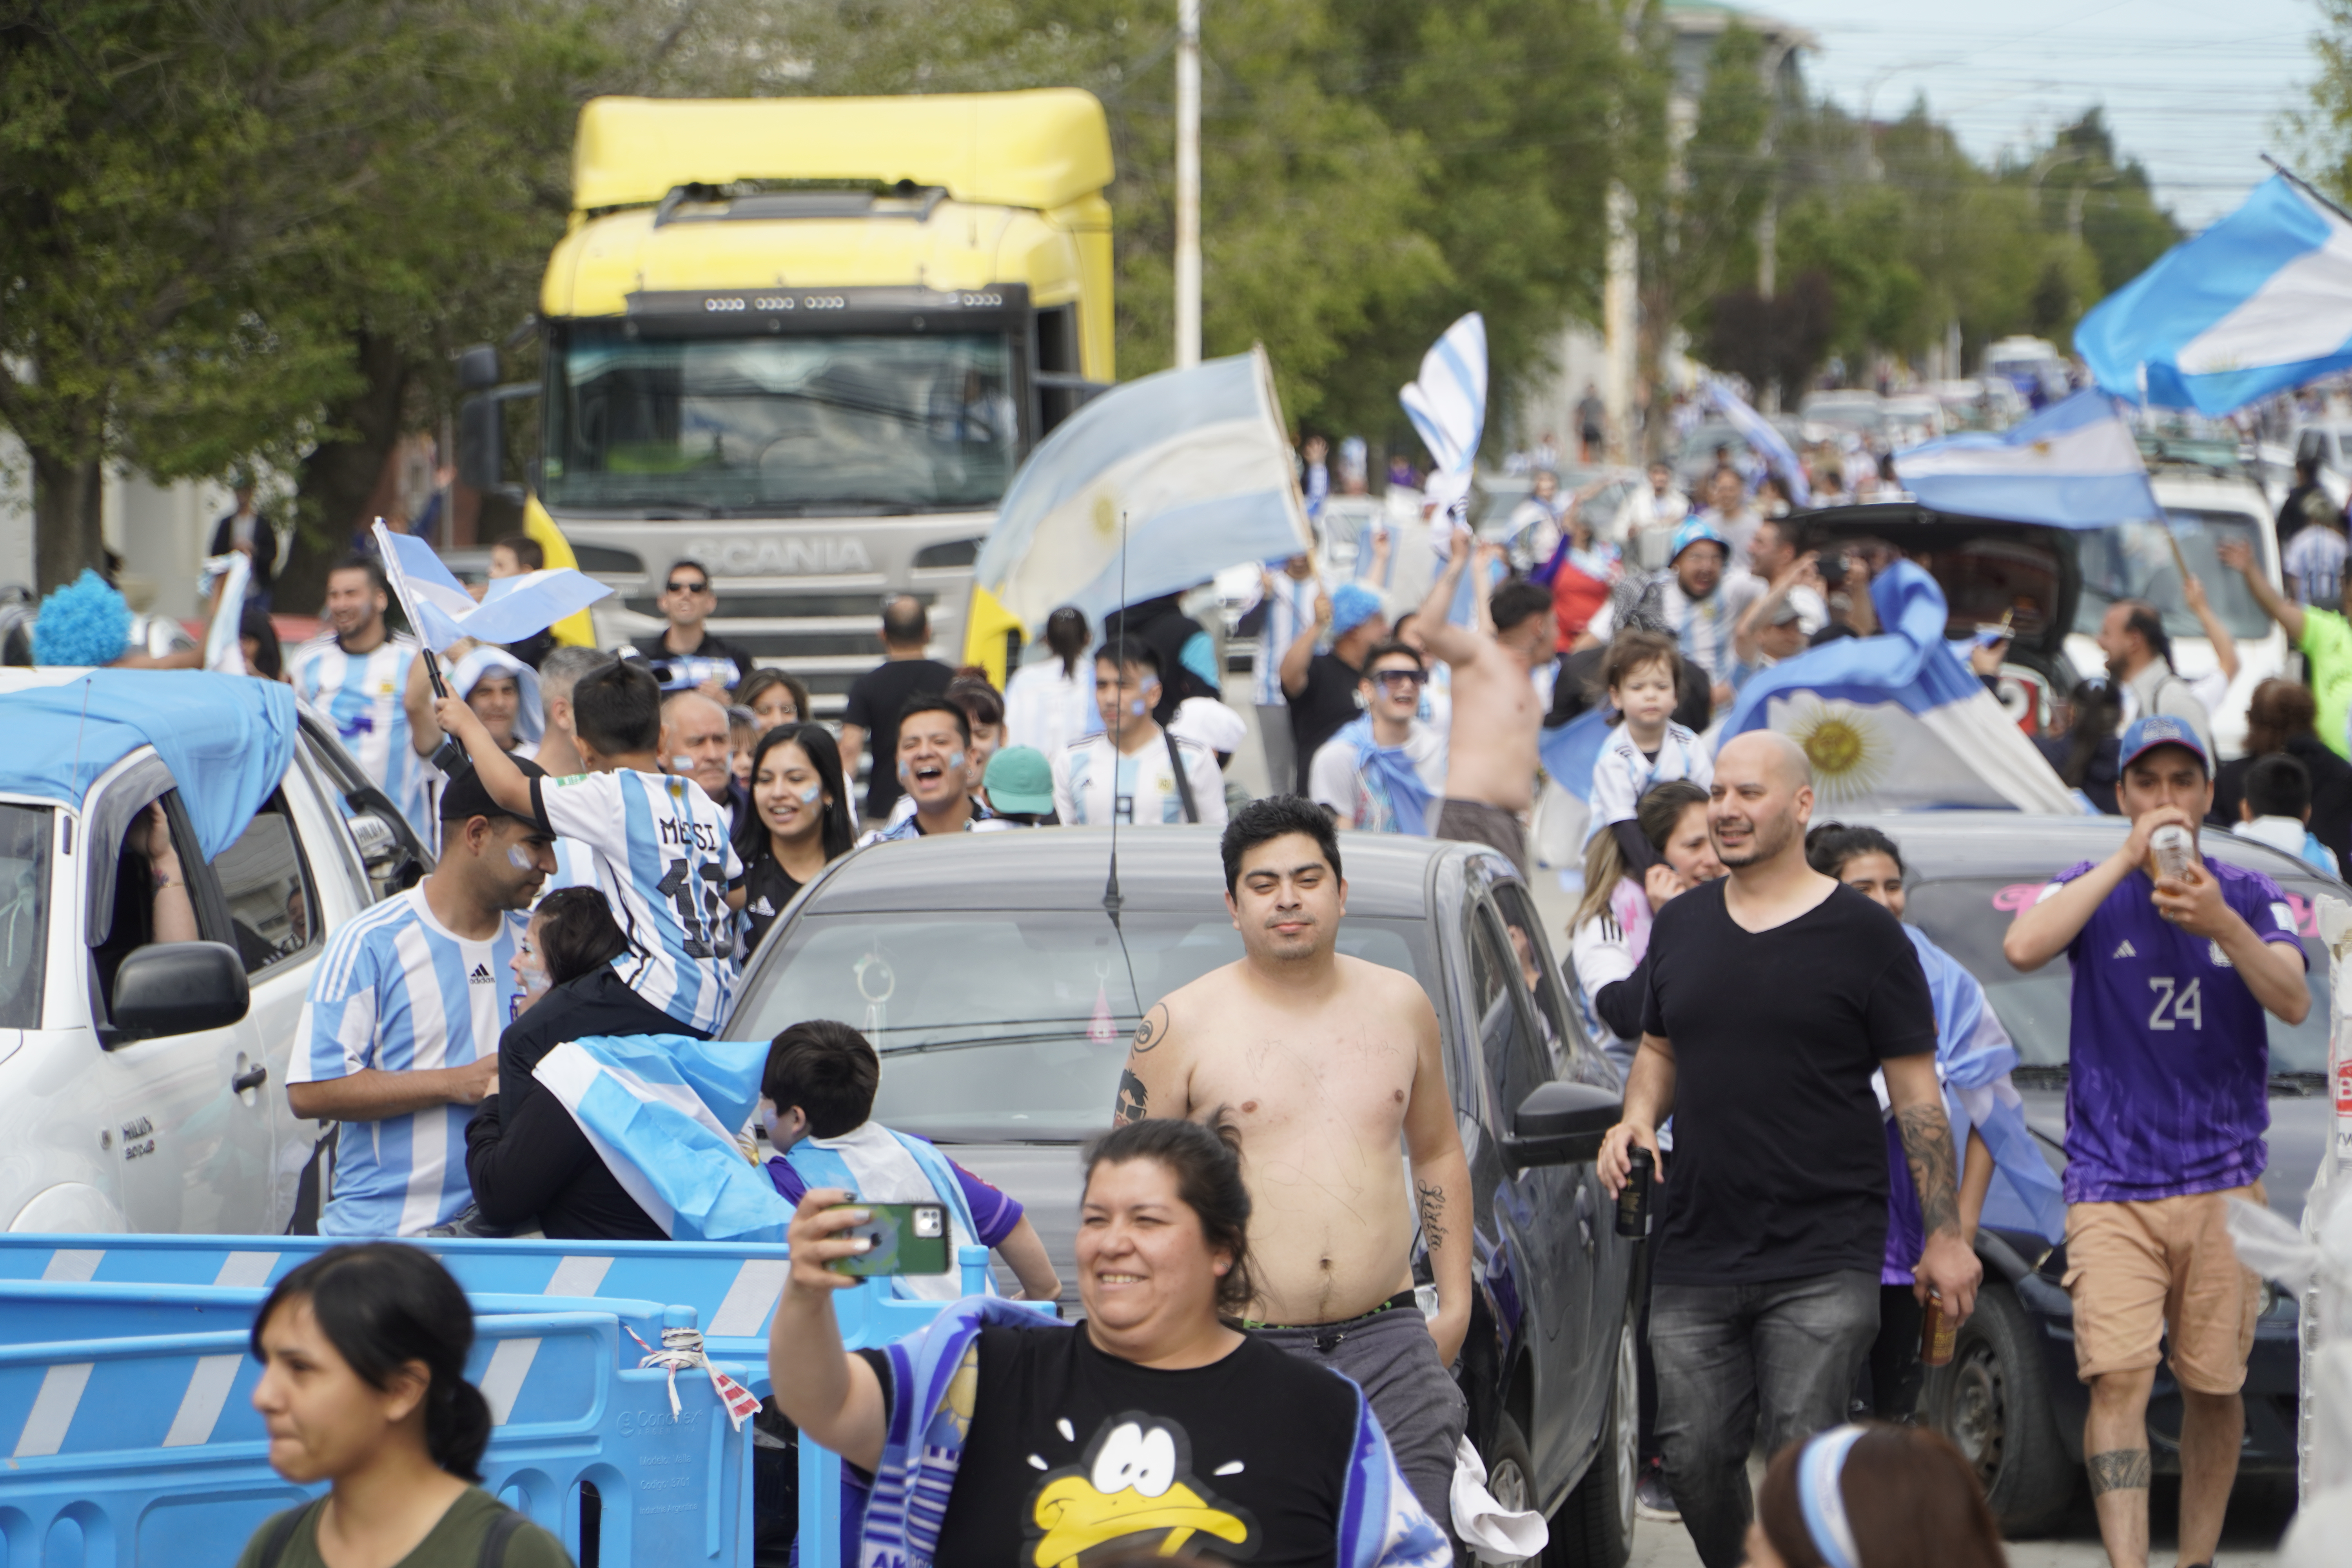 El festejo fue en todo el país: aquí, una imagen de la caravana de autos en Río Gallegos, Santa Cruz (Walter Díaz)